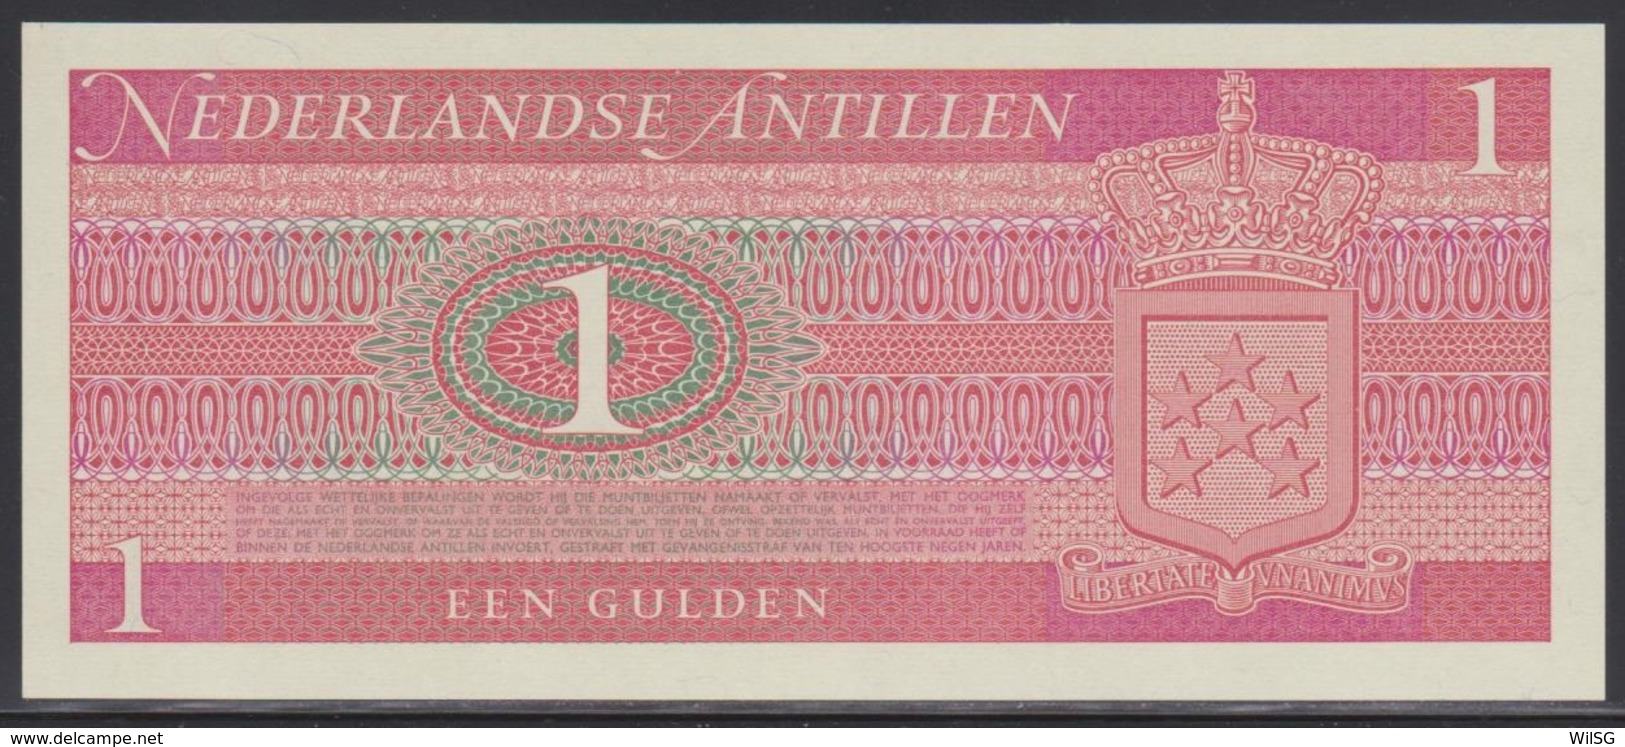 Netherlands Antilles 1 Gulden 08.09.1970 UNC - Netherlands Antilles (...-1986)